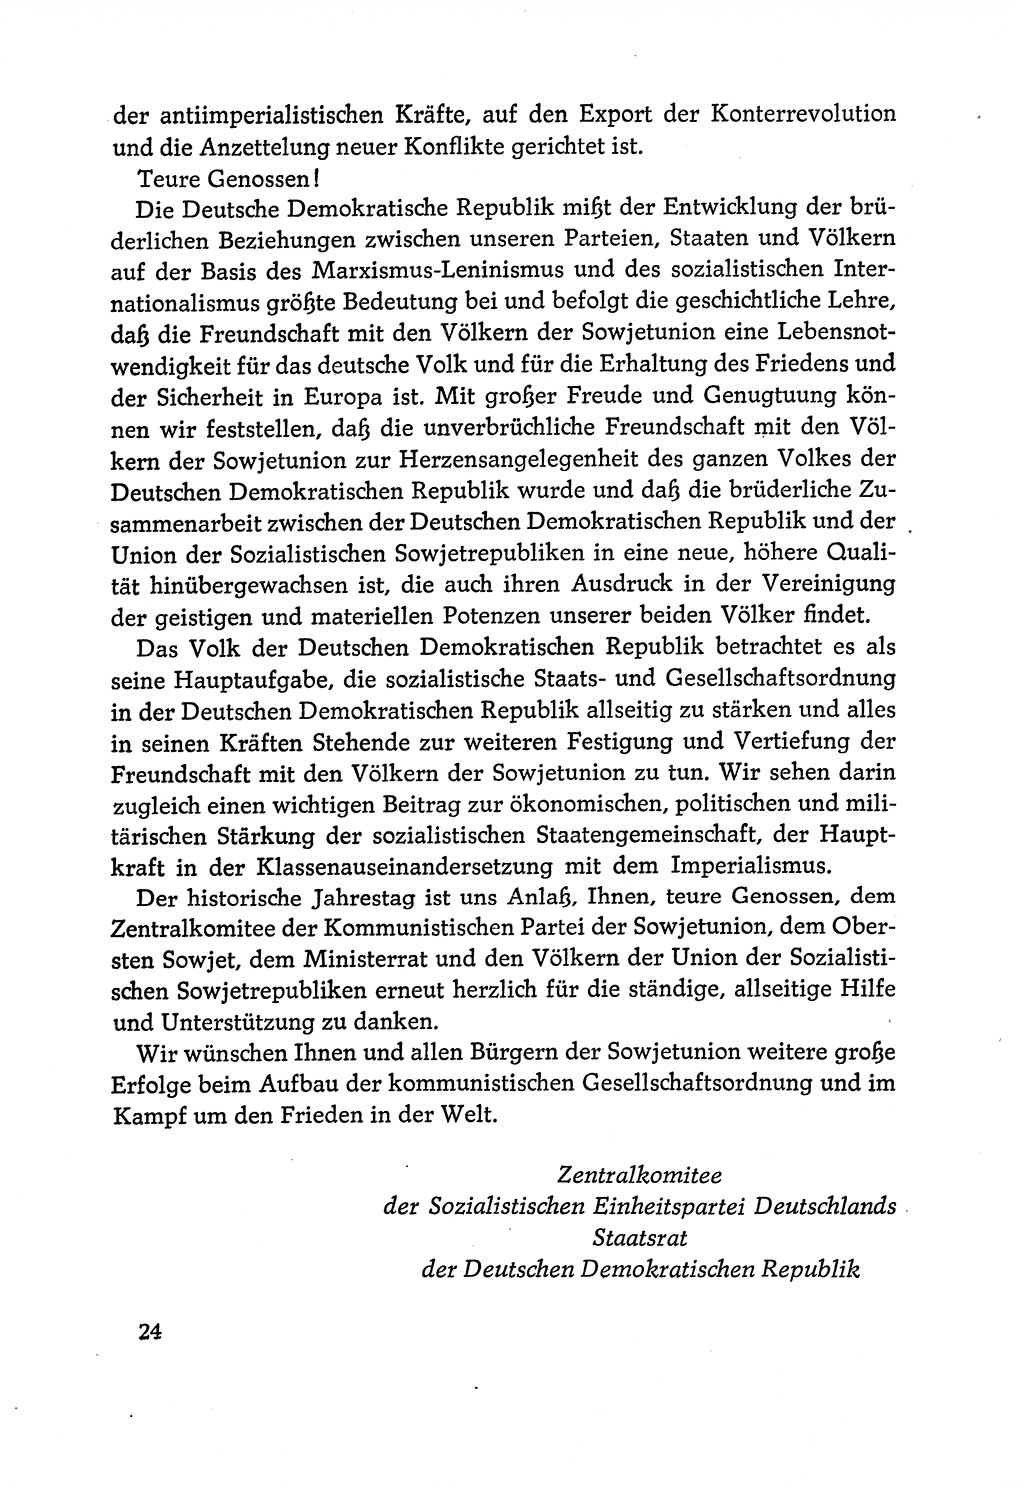 Dokumente der Sozialistischen Einheitspartei Deutschlands (SED) [Deutsche Demokratische Republik (DDR)] 1970-1971, Seite 24 (Dok. SED DDR 1970-1971, S. 24)